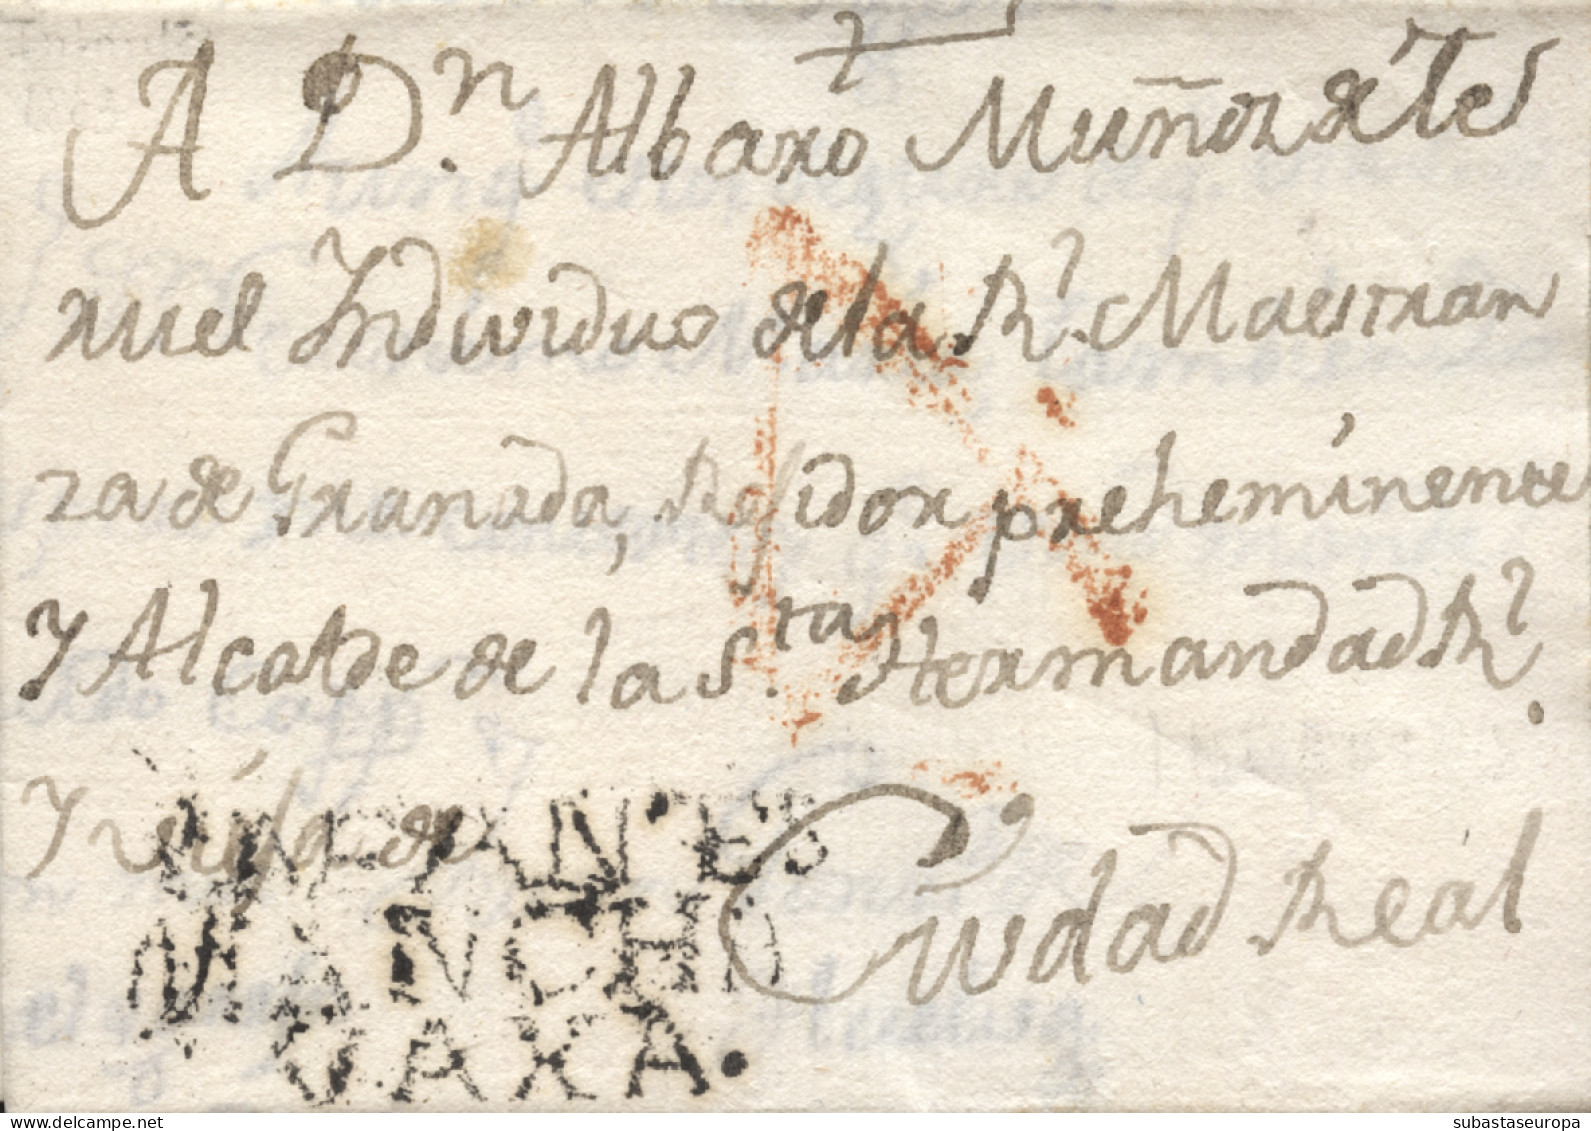 D.P. 23. 1803 (8 OCT). Carta De Infantes A Ciudad Real. Marca Nº 1N. Rara. - ...-1850 Vorphilatelie